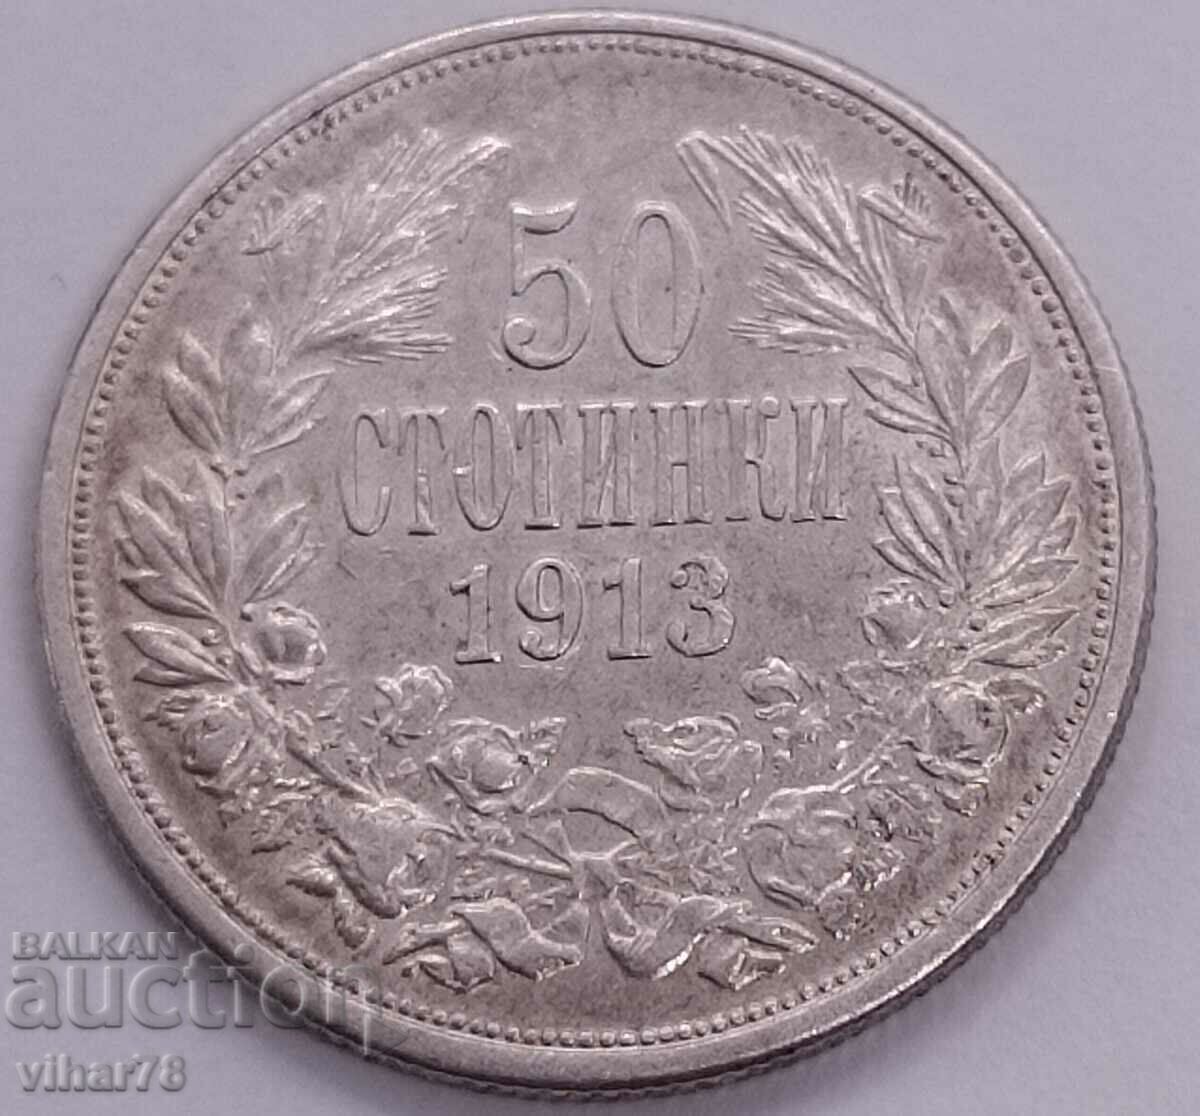 Ασήμι 50 σεντς 1913